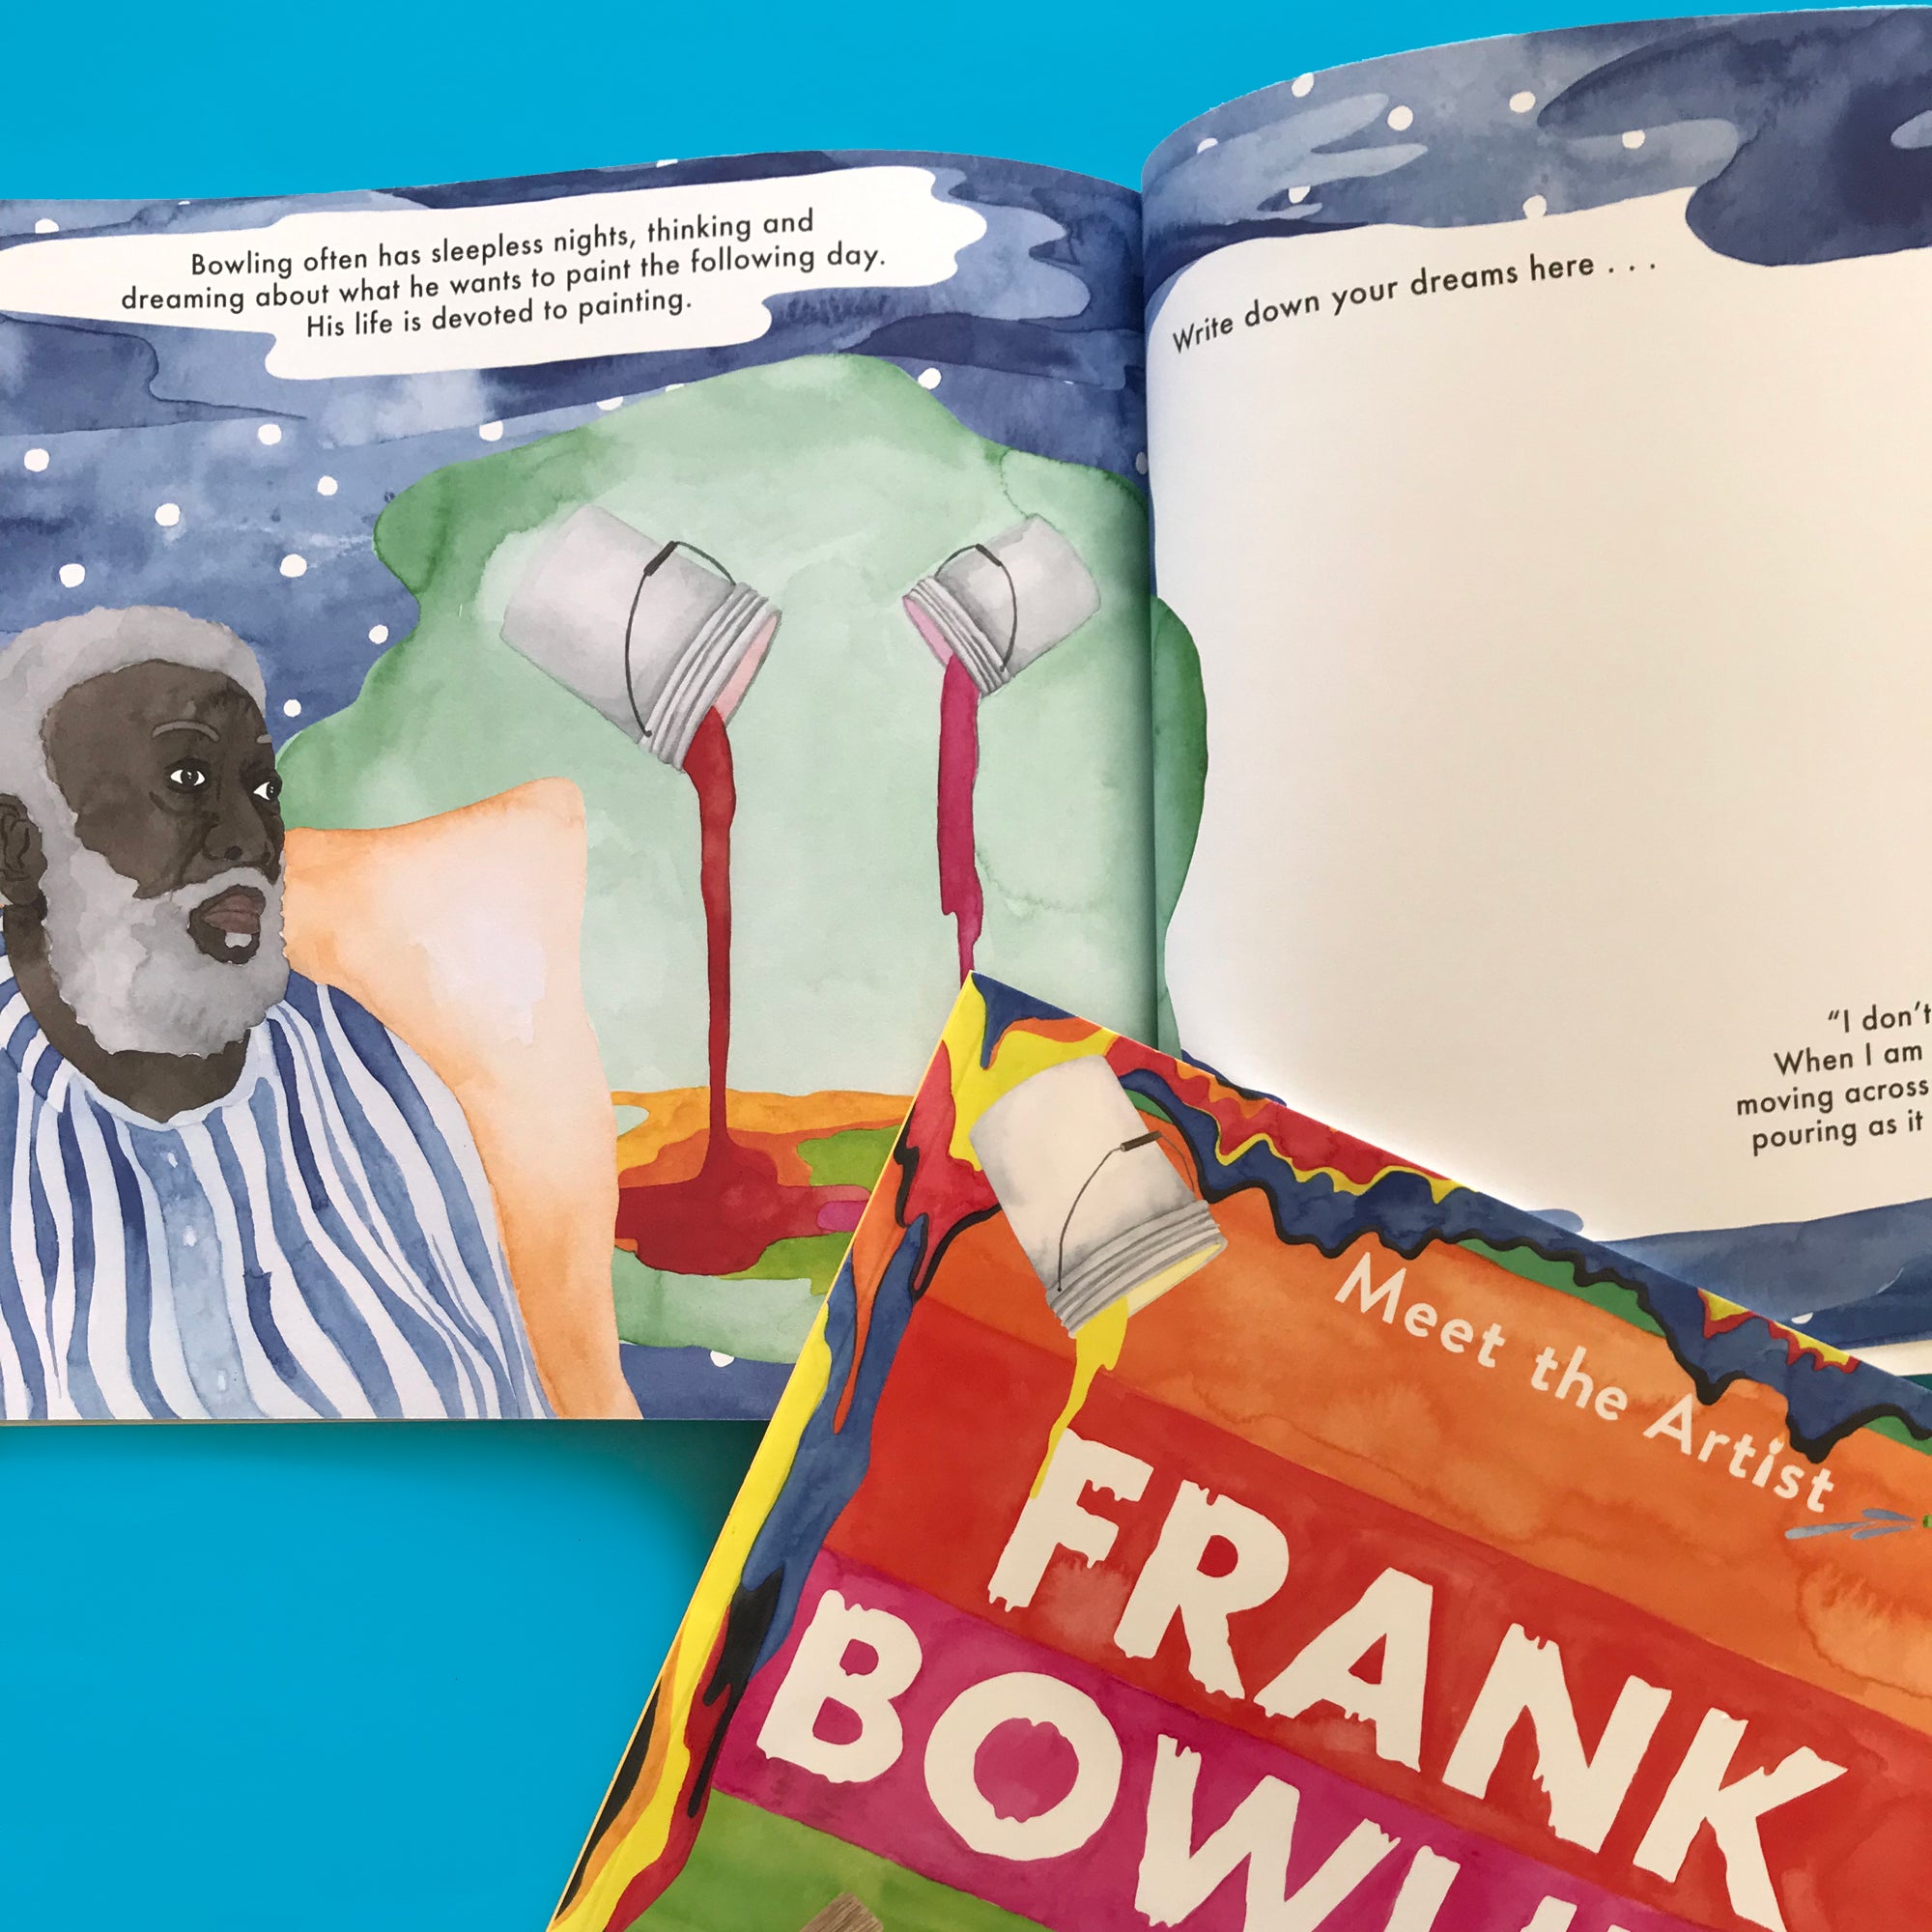 Meet the Artist: Frank Bowling activity book